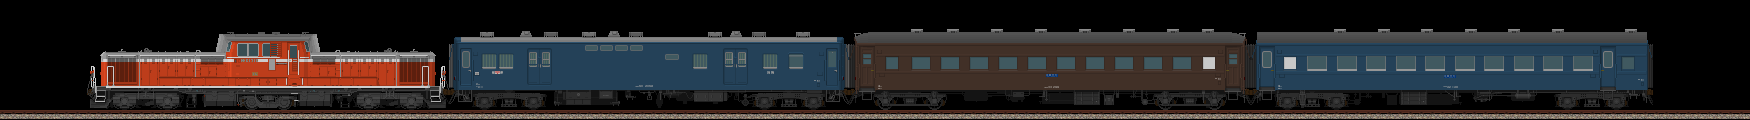 スユニ50と旧型客車